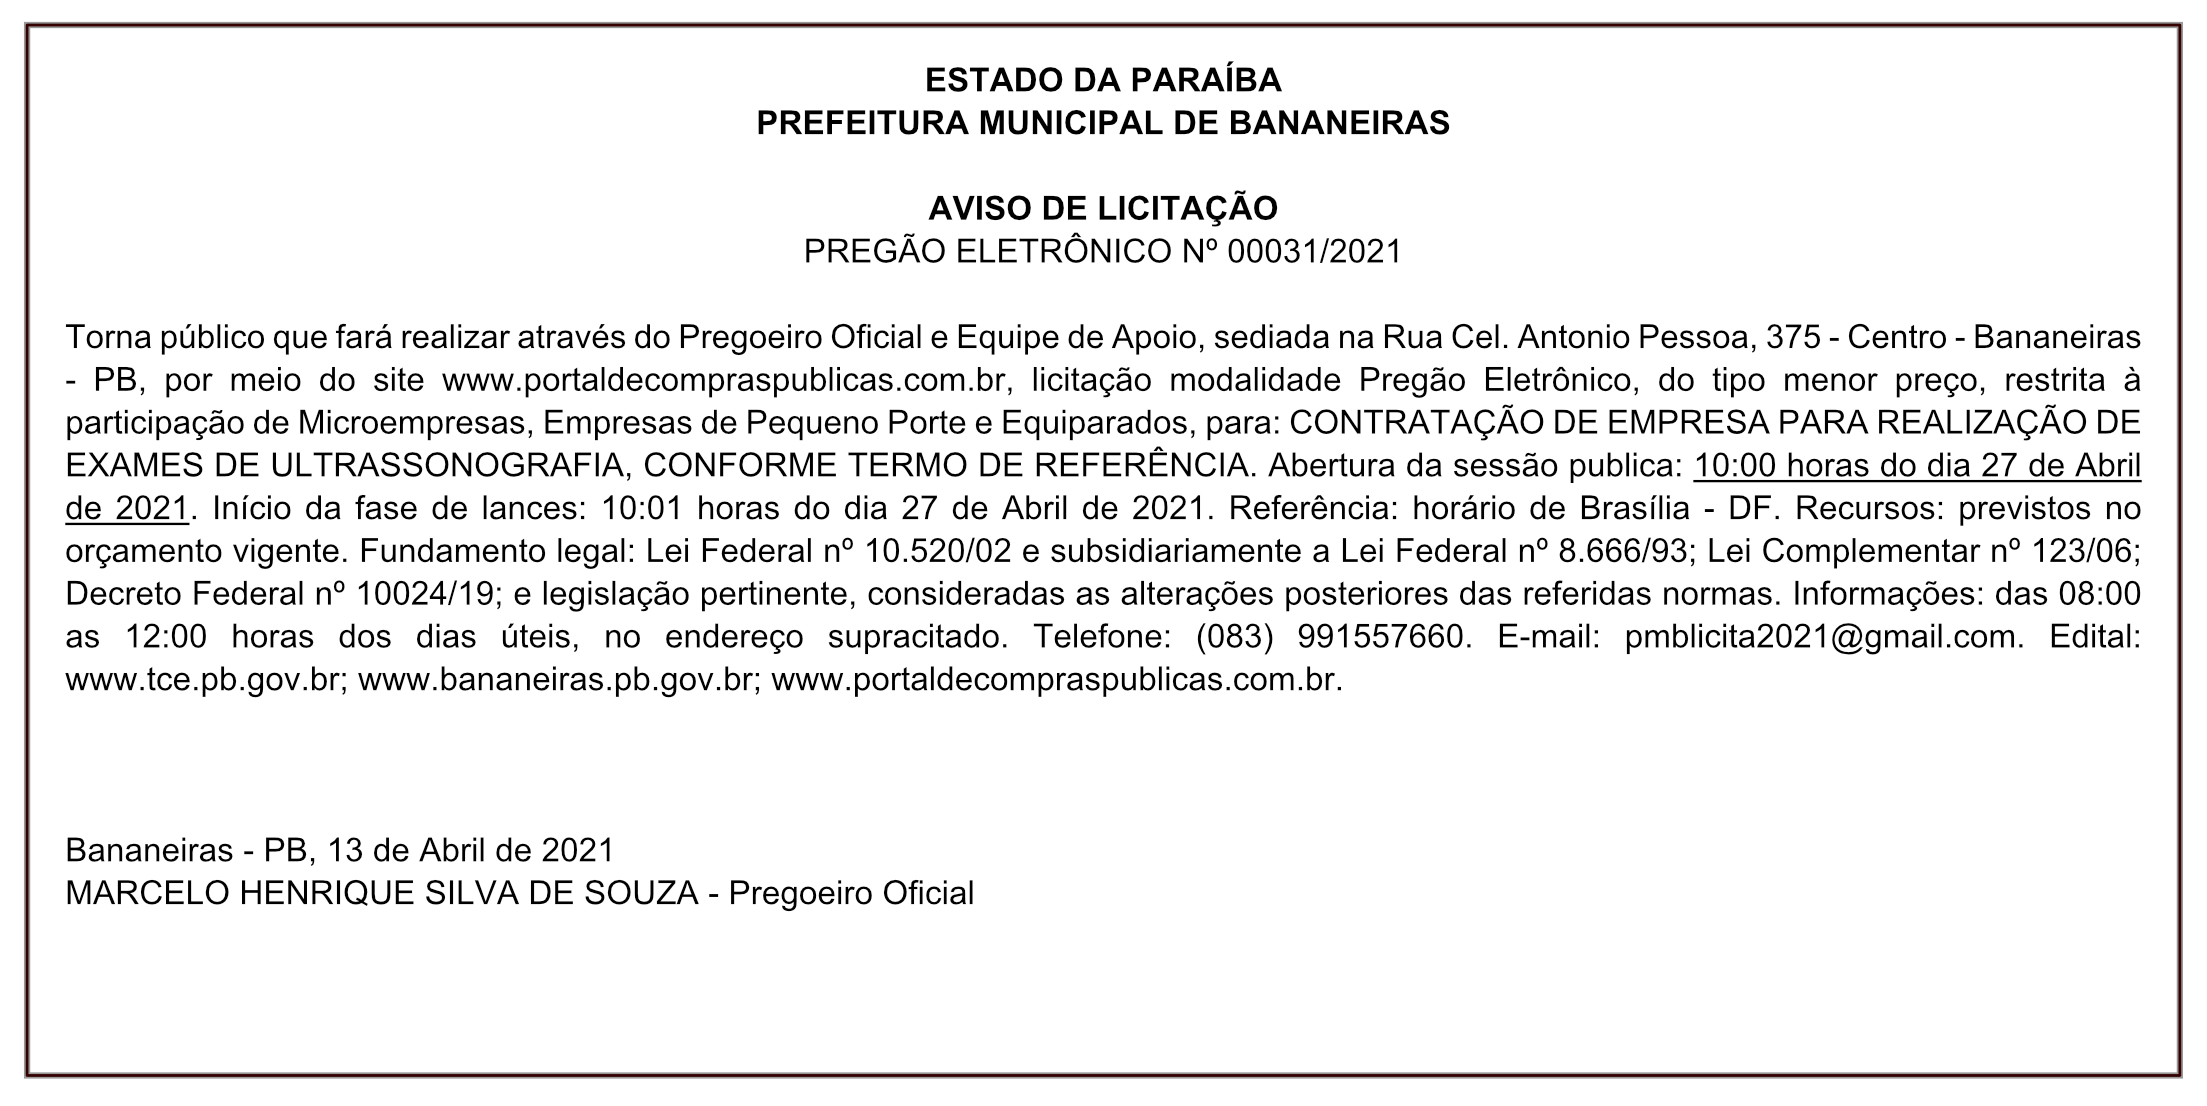 PREFEITURA MUNICIPAL DE BANANEIRAS – AVISO DE LICITAÇÃO – PREGÃO ELETRÔNICO Nº 00031/2021